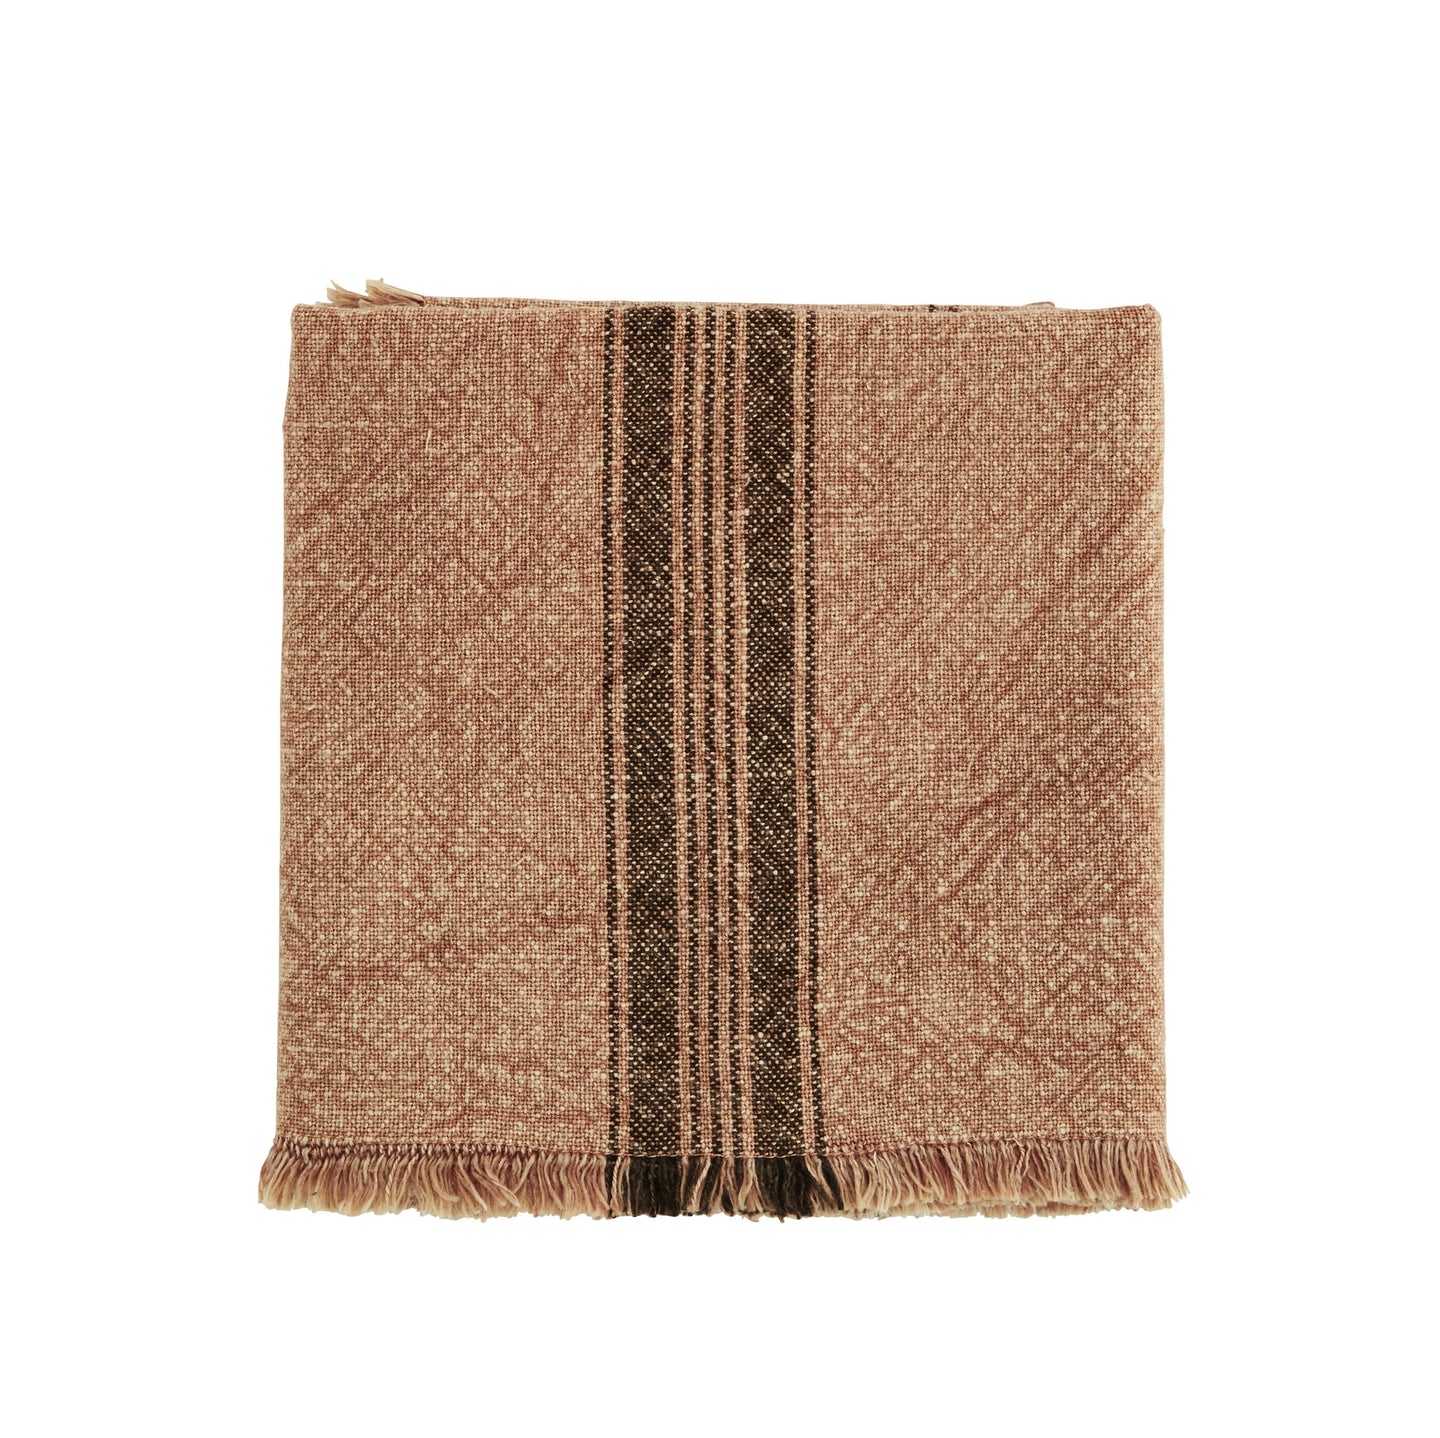 Striped Heavy Linen Tea Towel